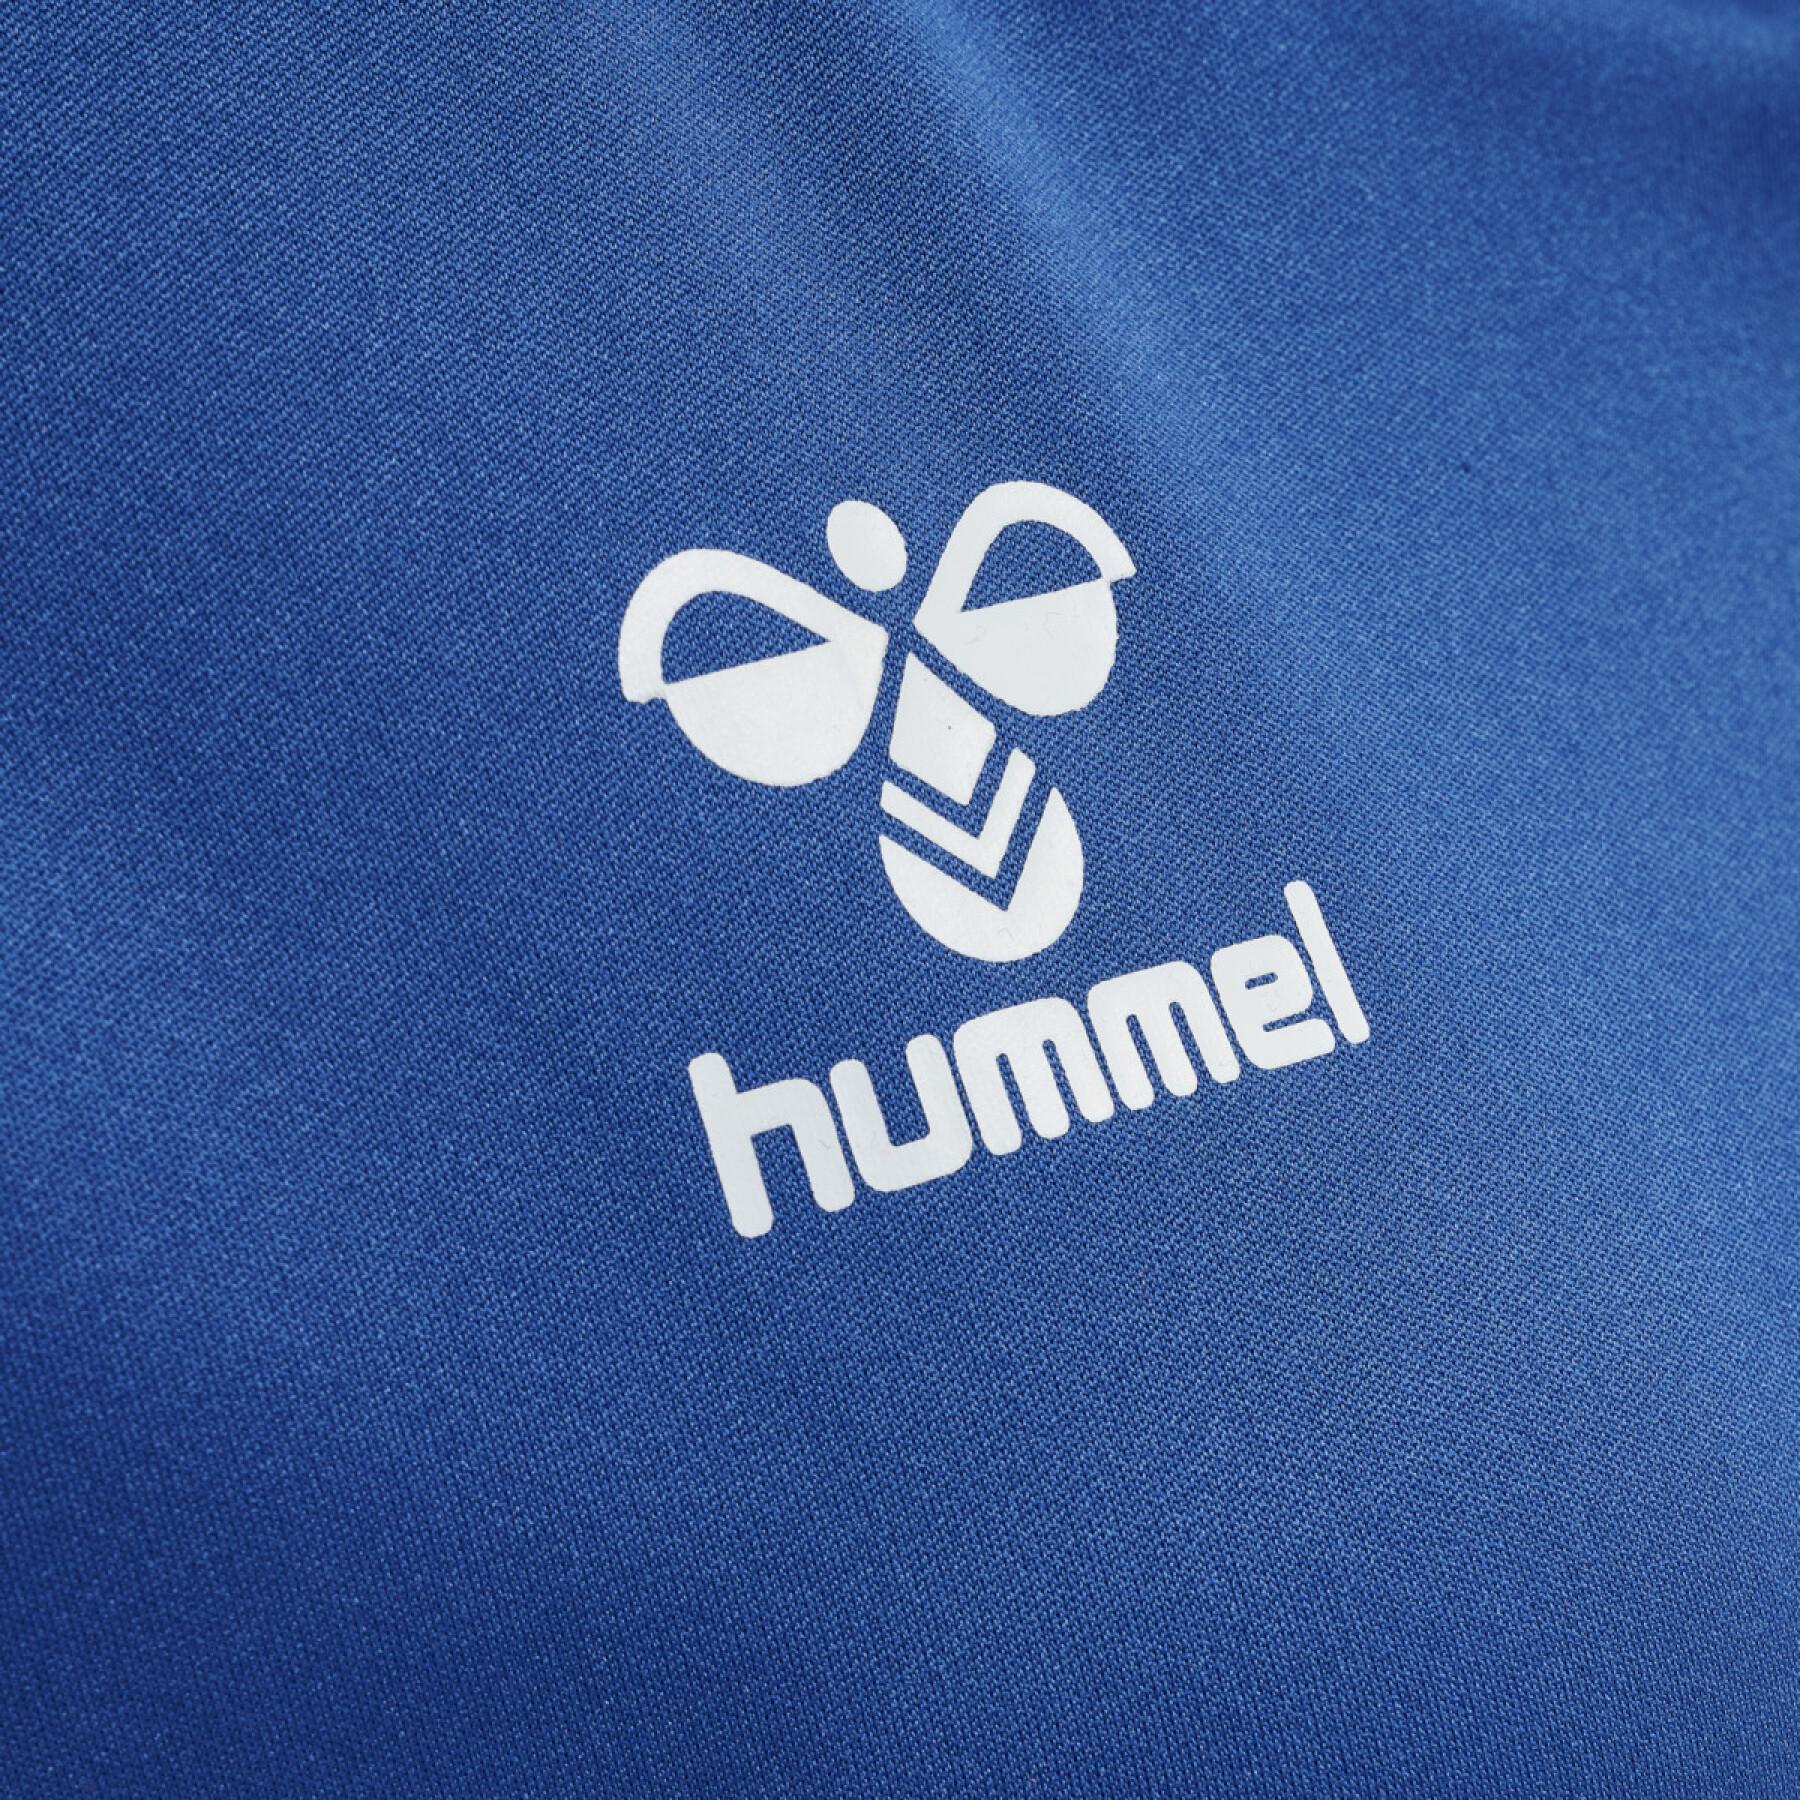 Women's T-shirt Hummel hmlhmlCORE volley